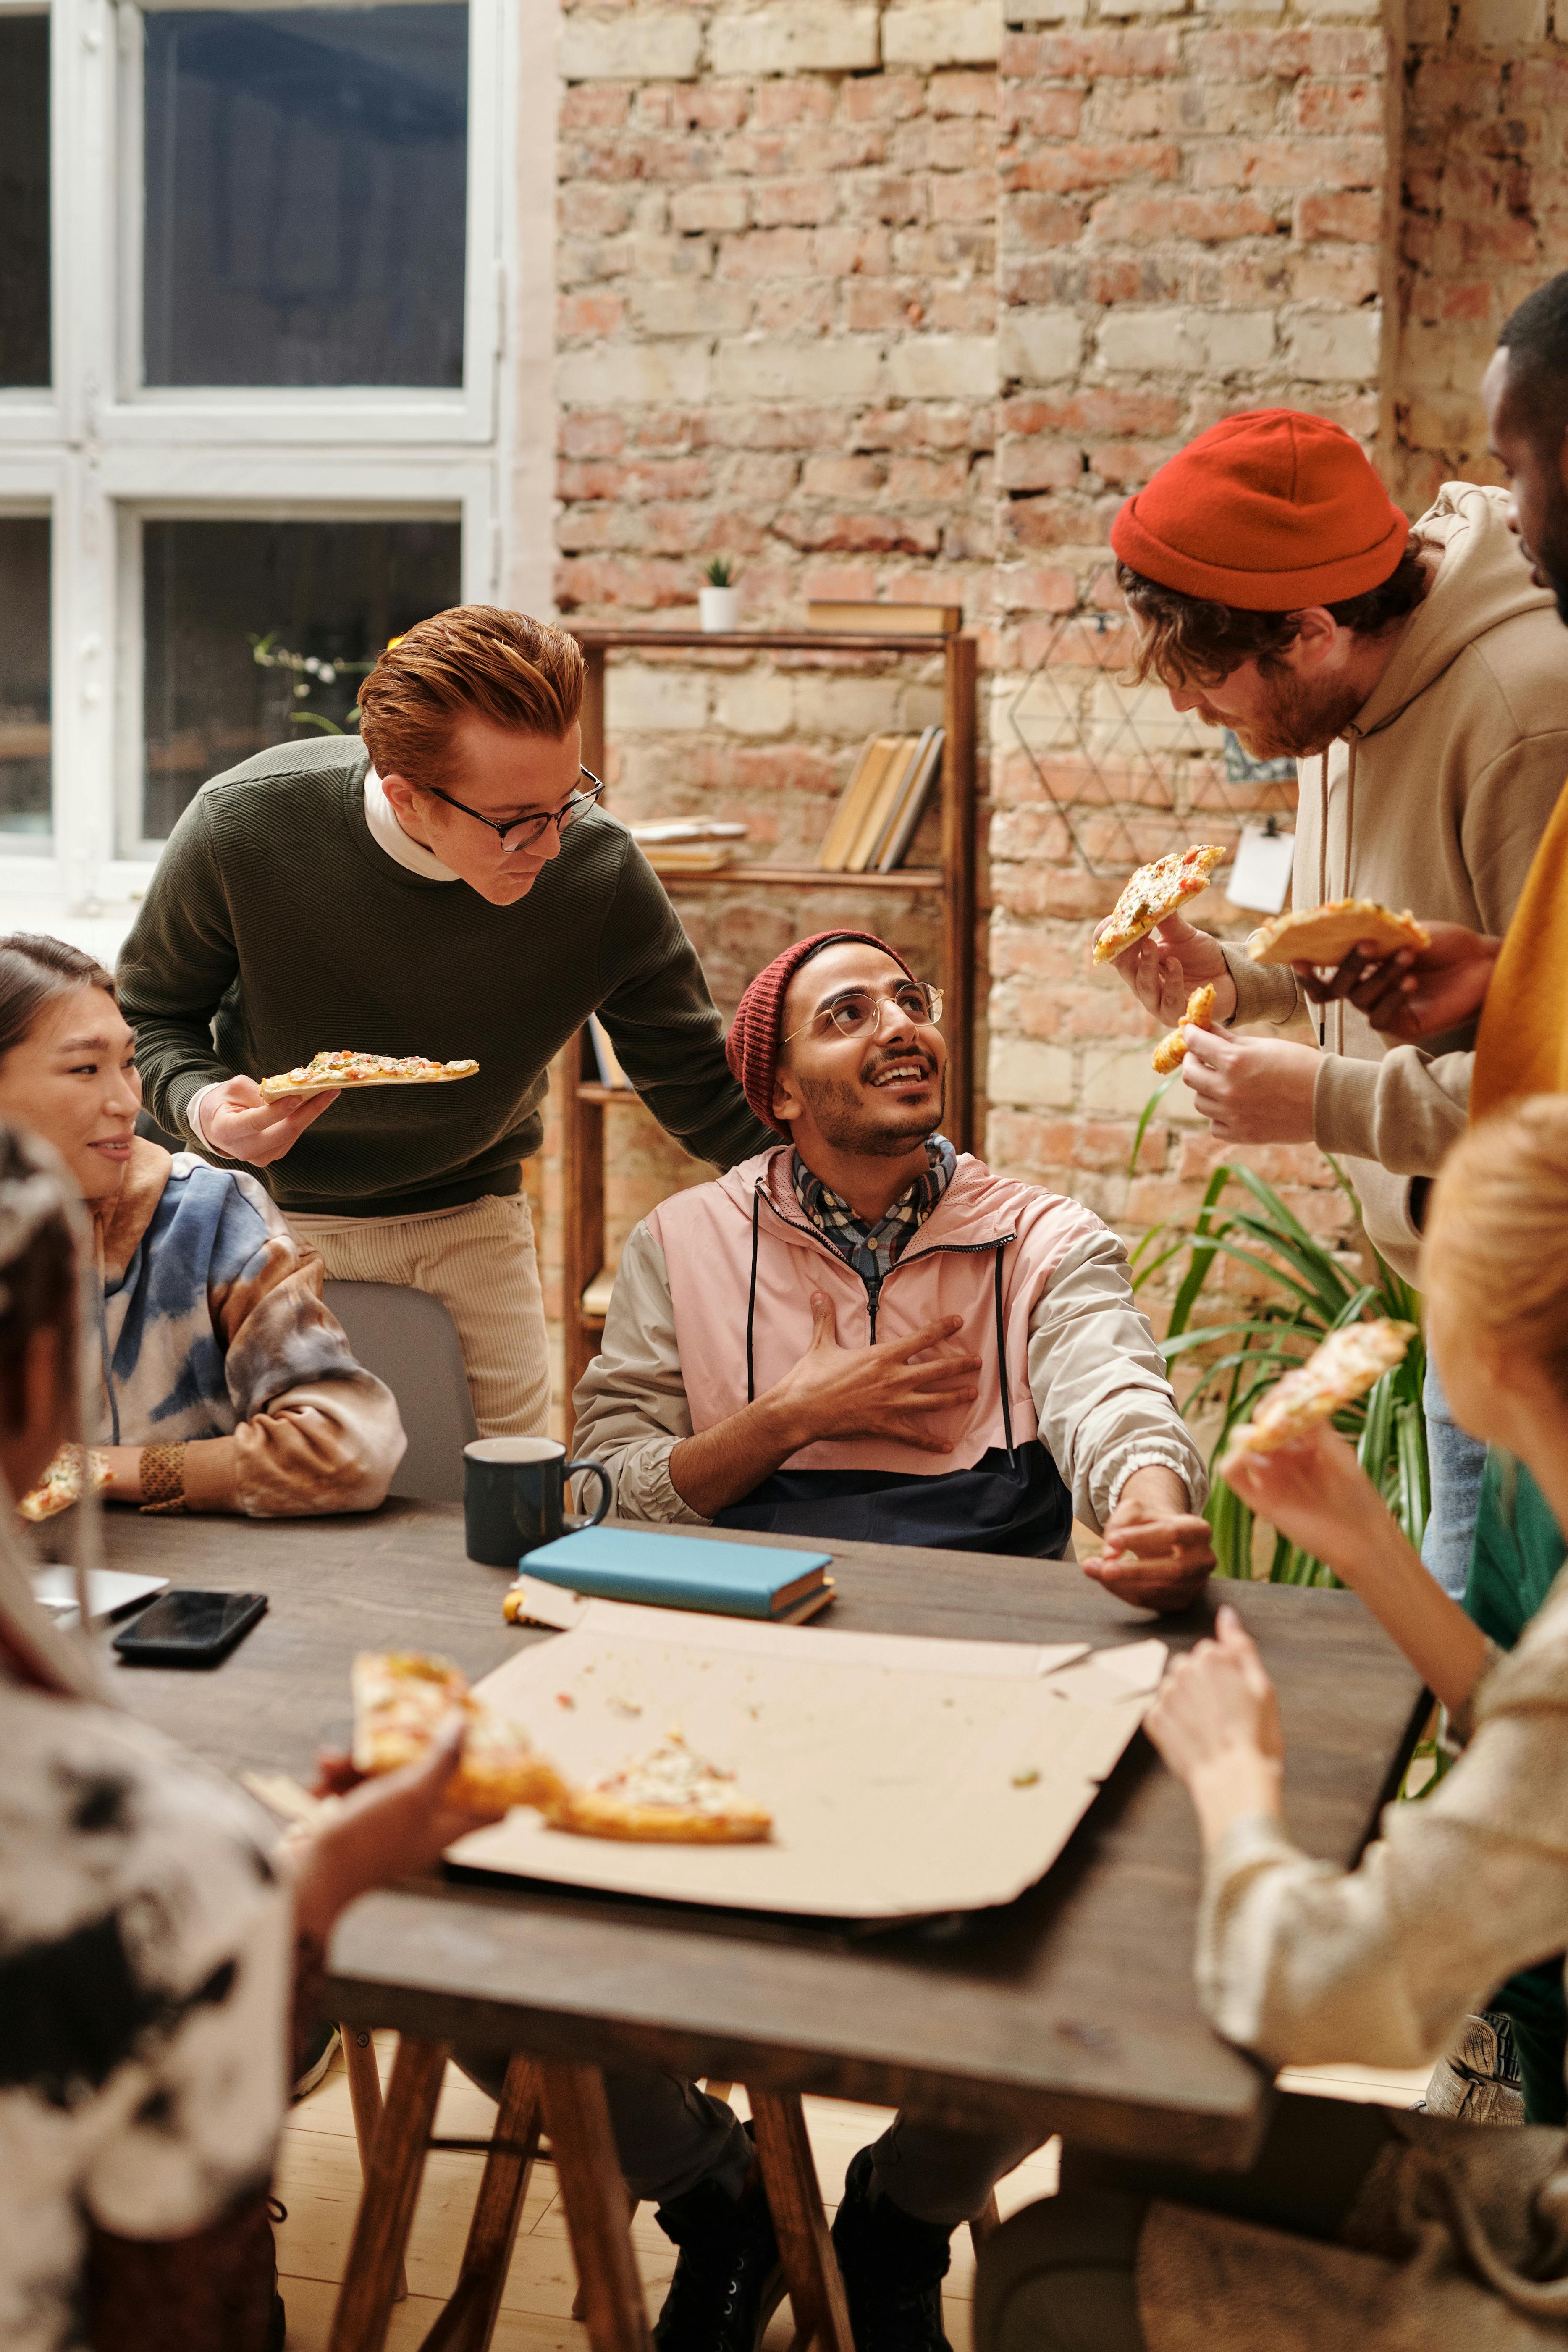 Un groupe d'amis mangeant et discutant | Source : Pexels